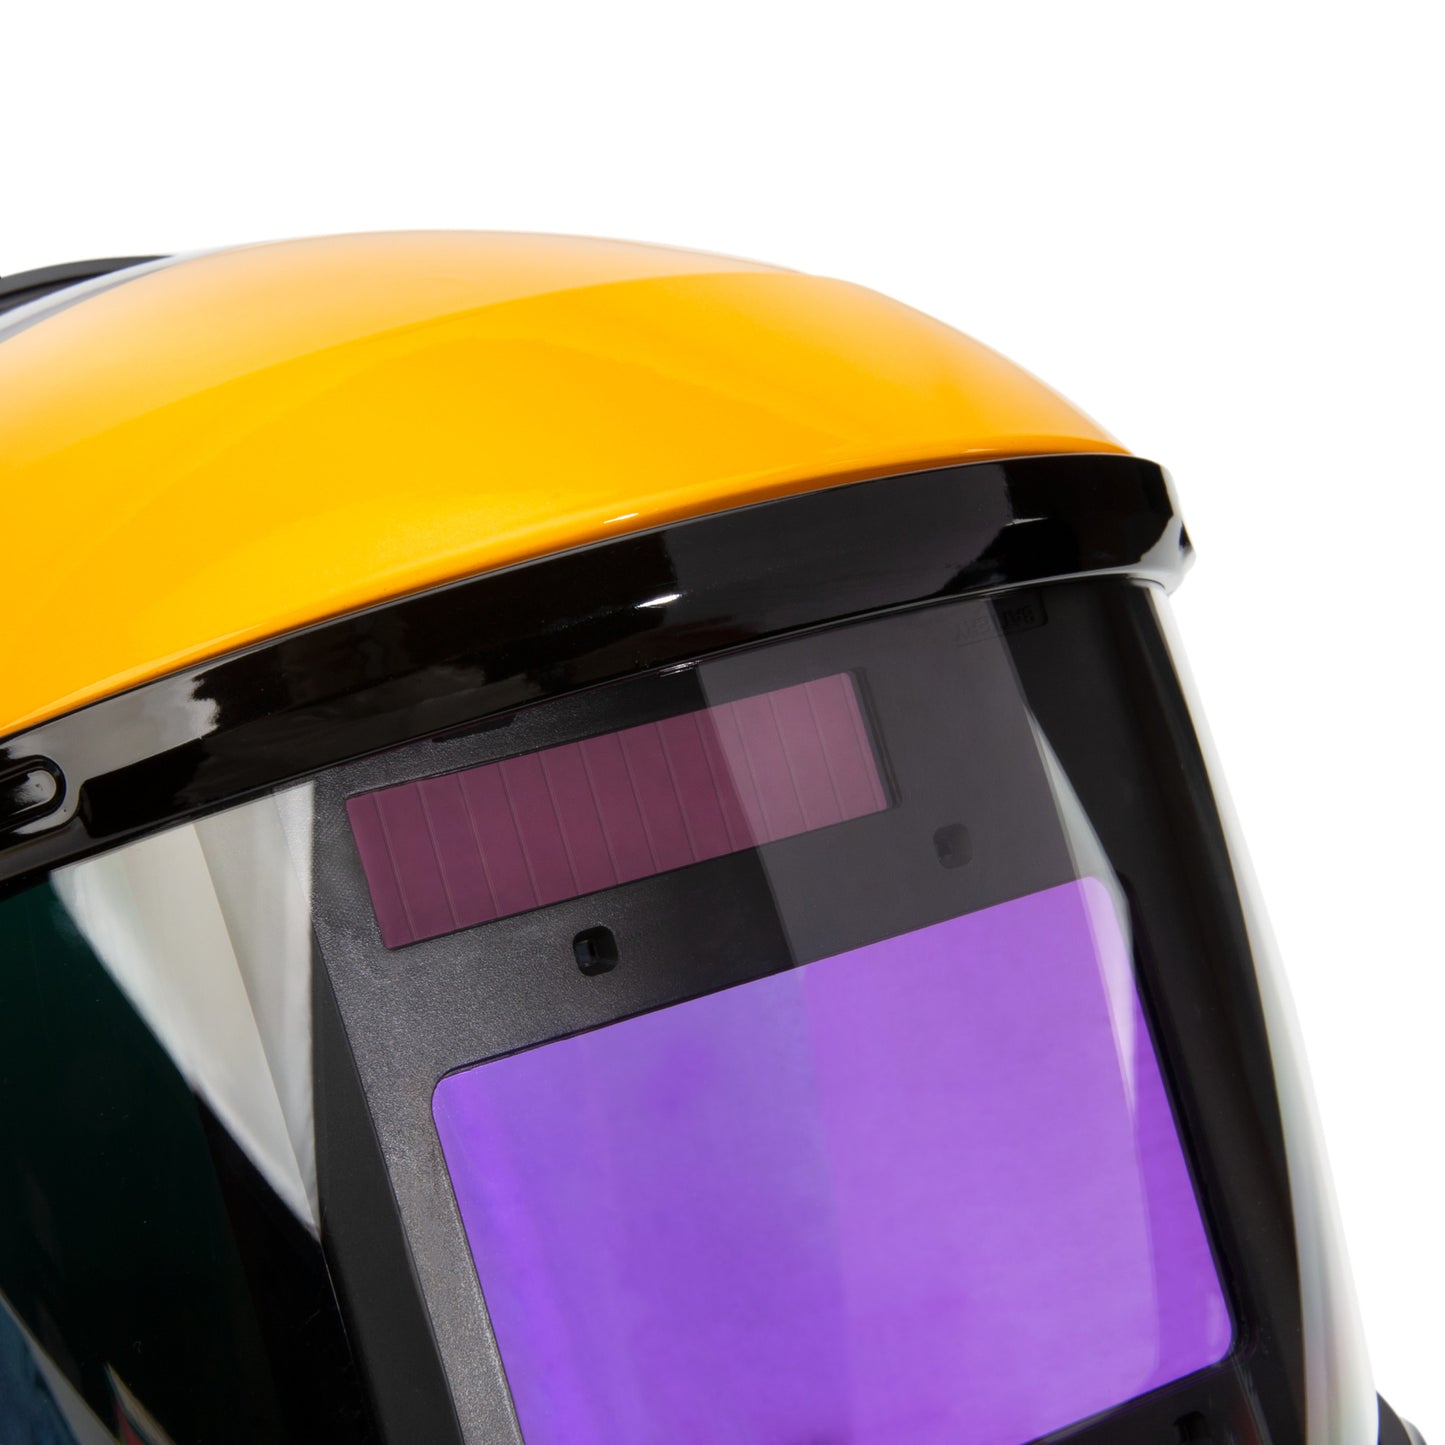 Replacement Auto Darkening Filter for DXMF21011 Welding Helmet